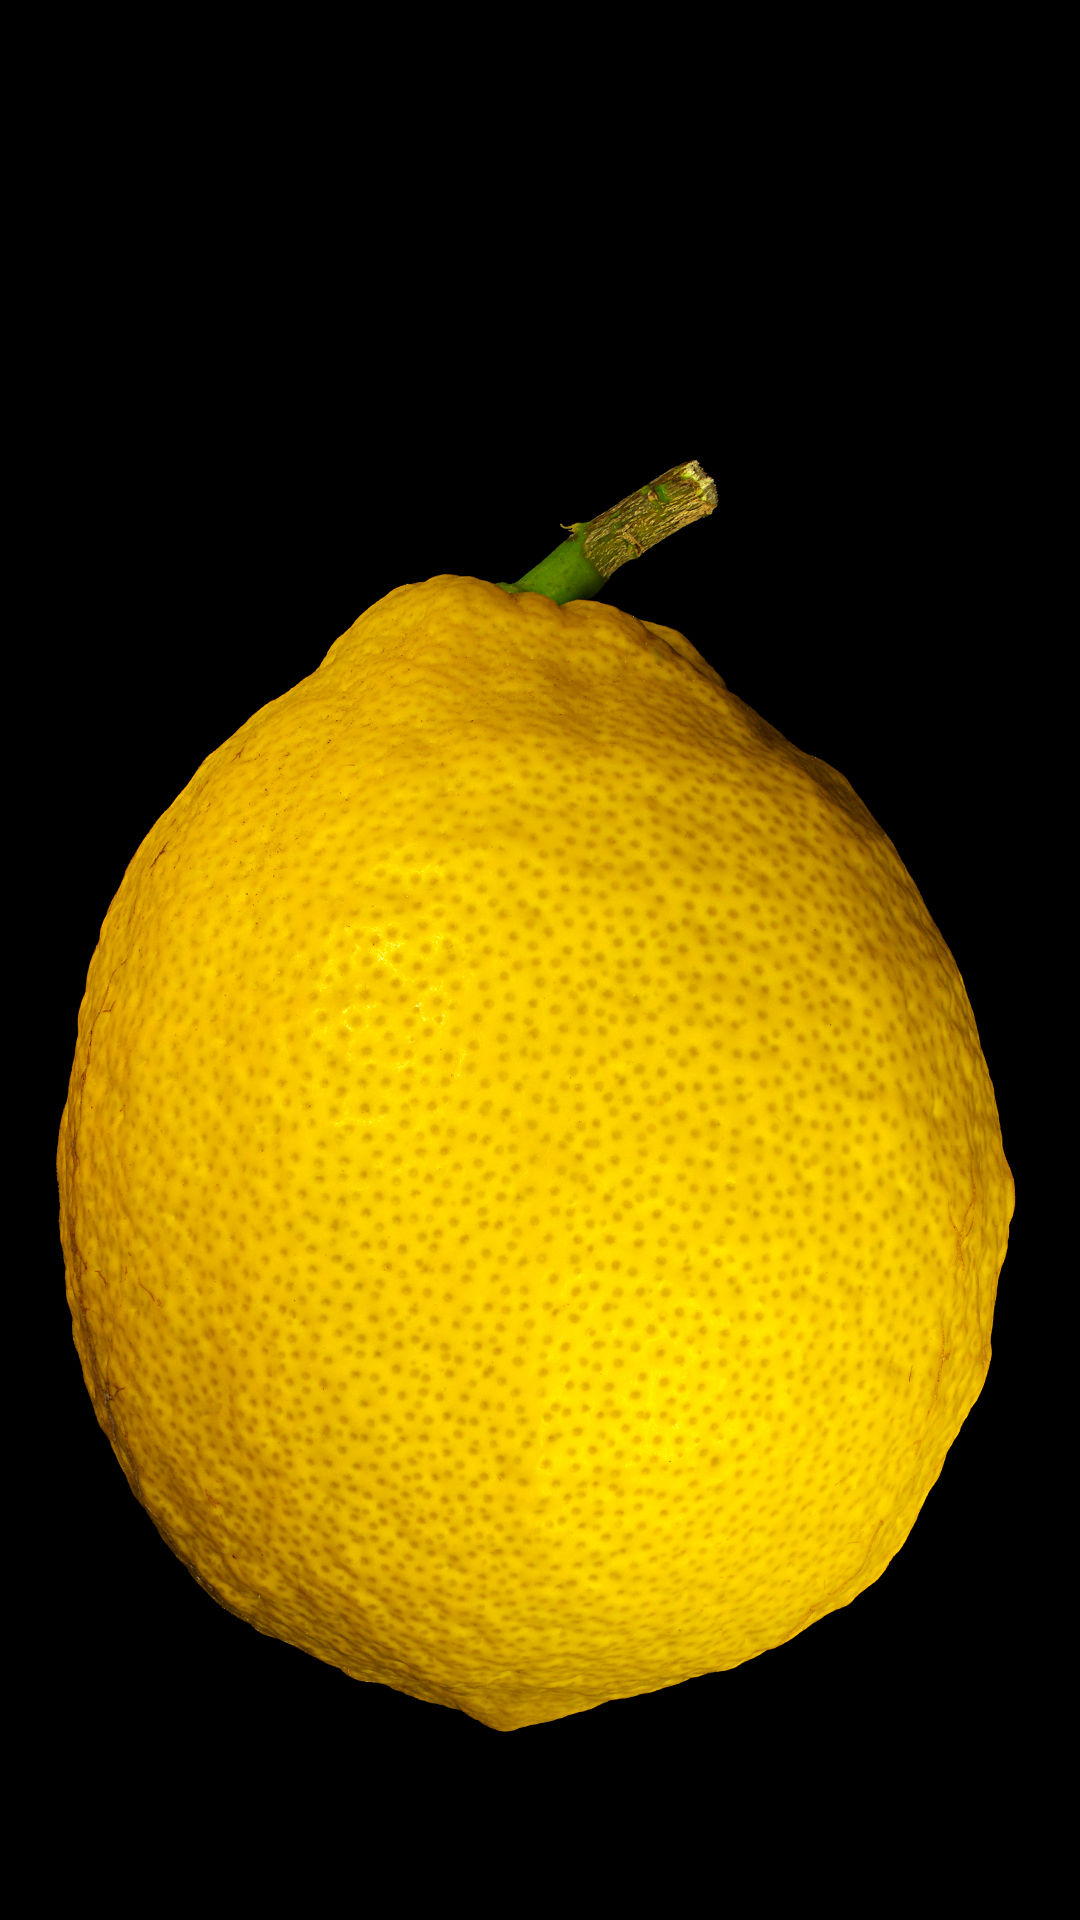 Variegated lemon: Citrus × limon ‚Foliis Variegatis‘